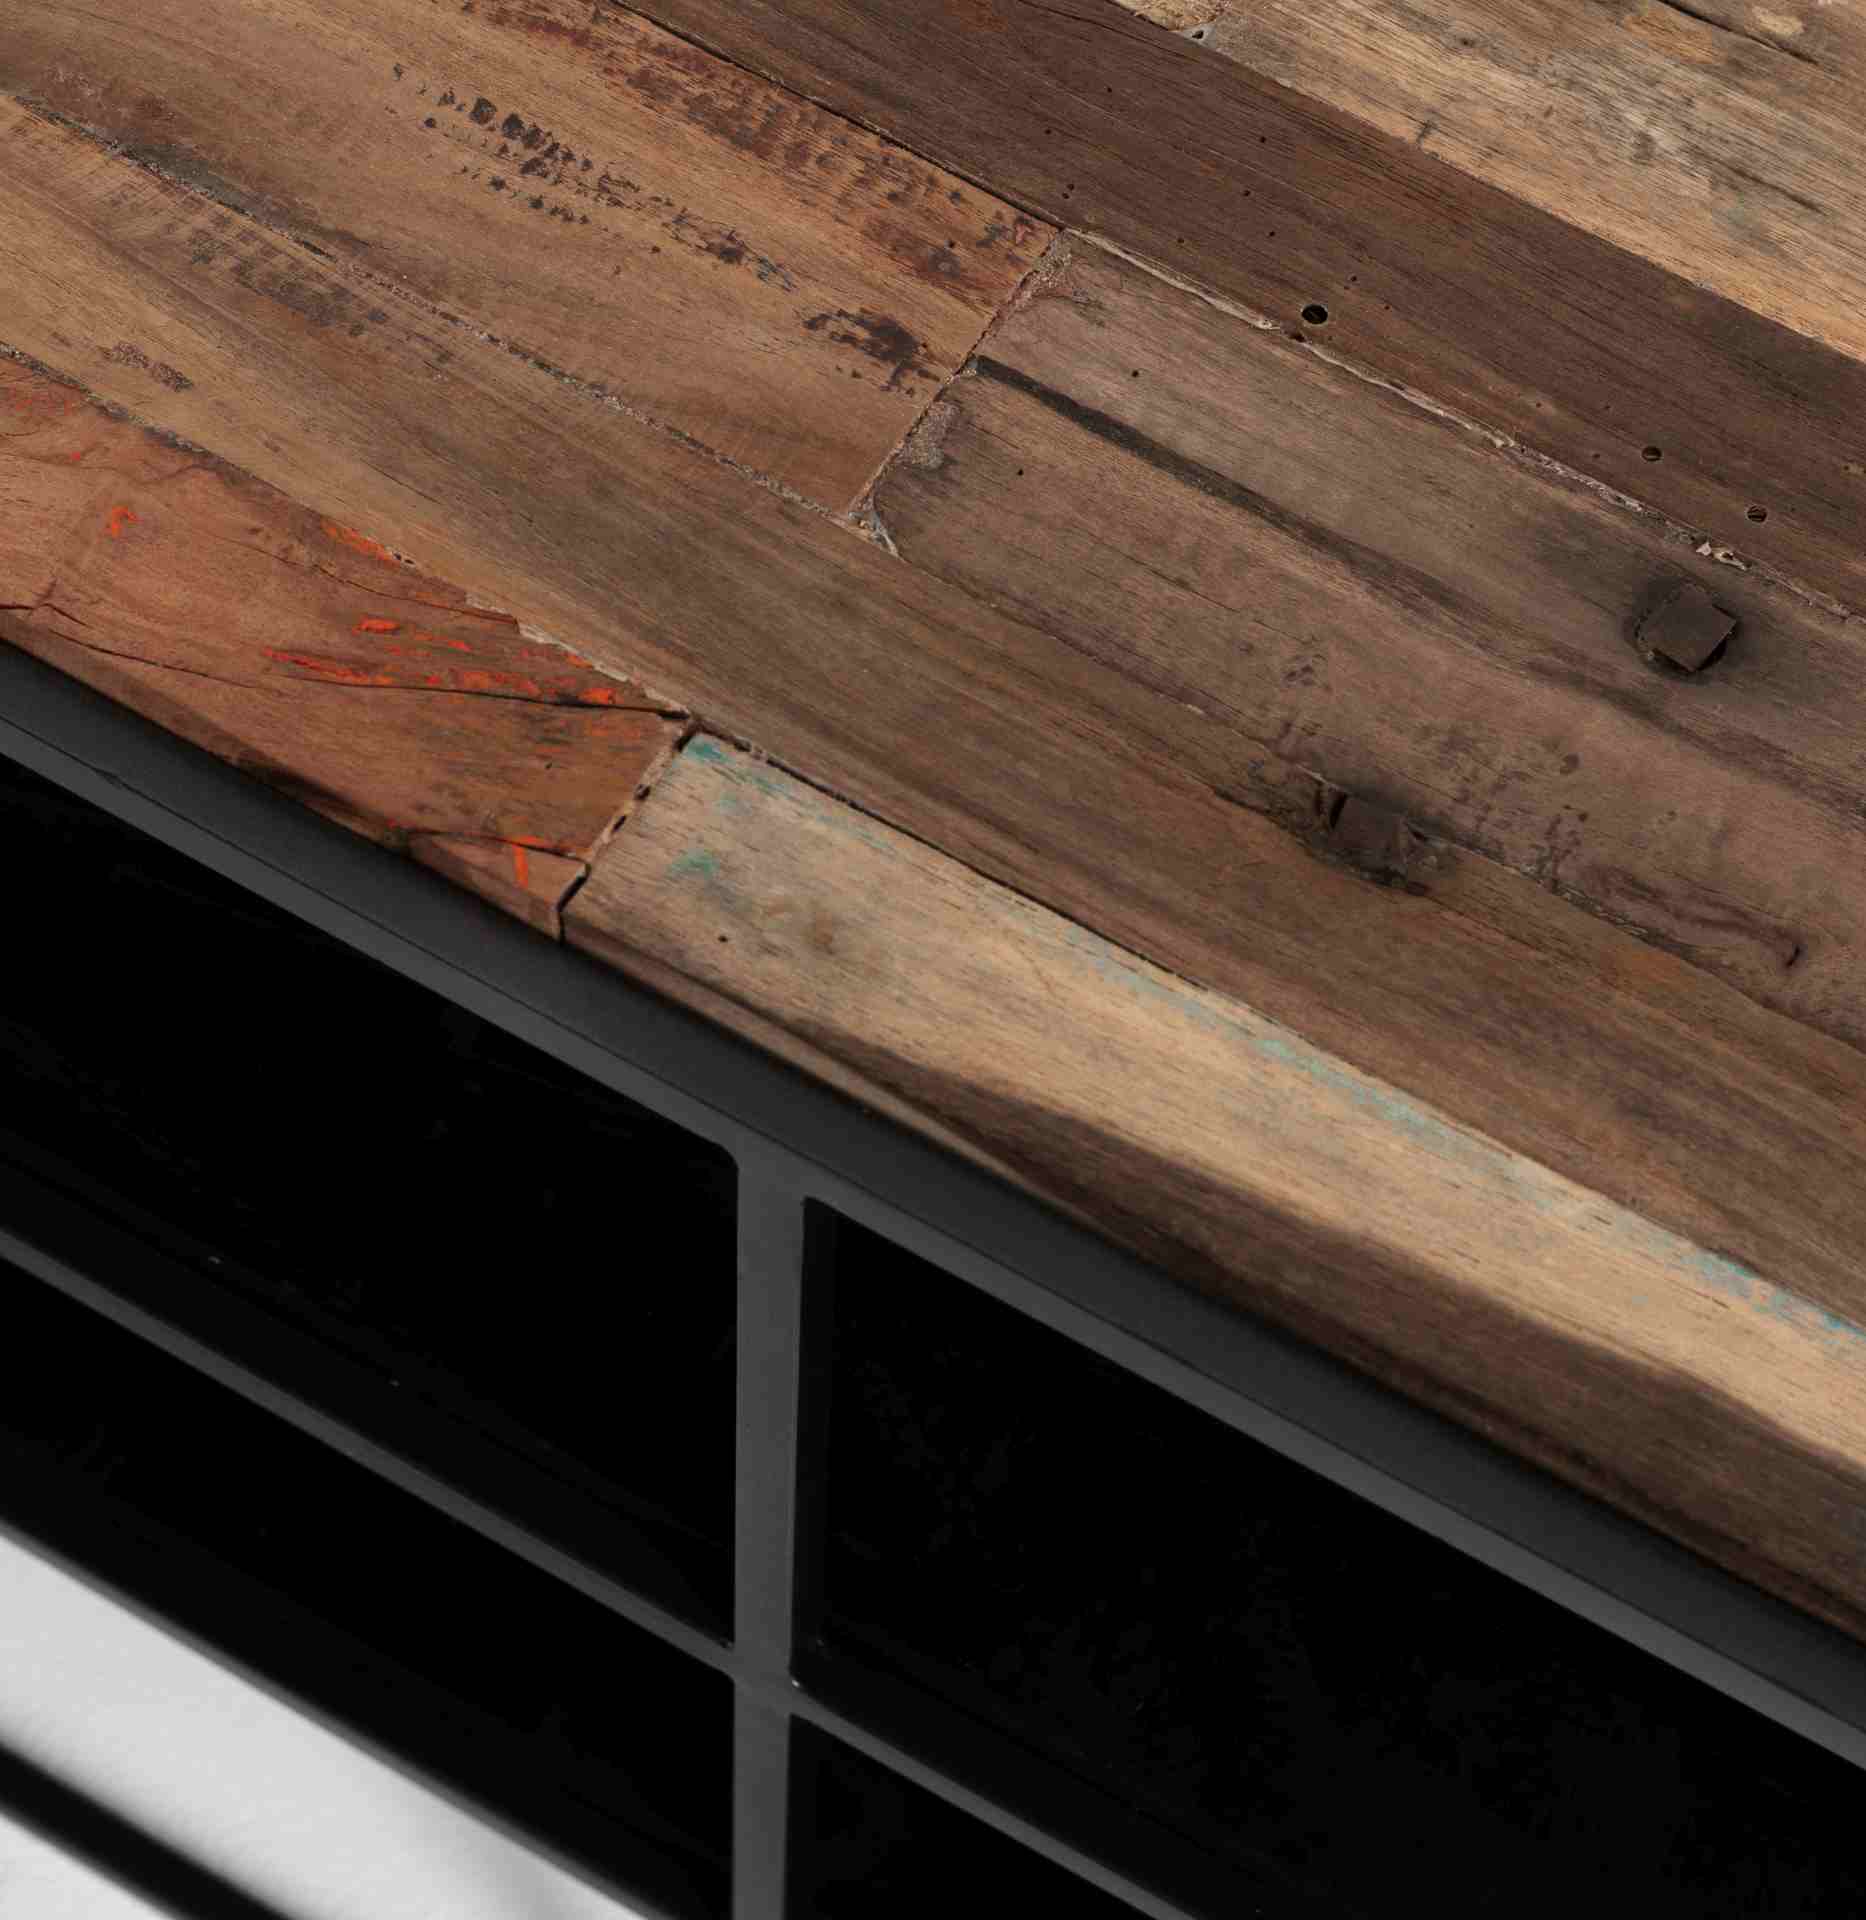 Das TV-Board Rustica überzeugt mit seinem Industriellen Design. Gefertigt wurde es aus einem Mix aus Recyceltem Boots Holz und Mindi Holz, welches einen schwarzen und natürlichen Farbton besitzt. Das Gestell ist aus Metall und hat eine schwarze Farbe. Das